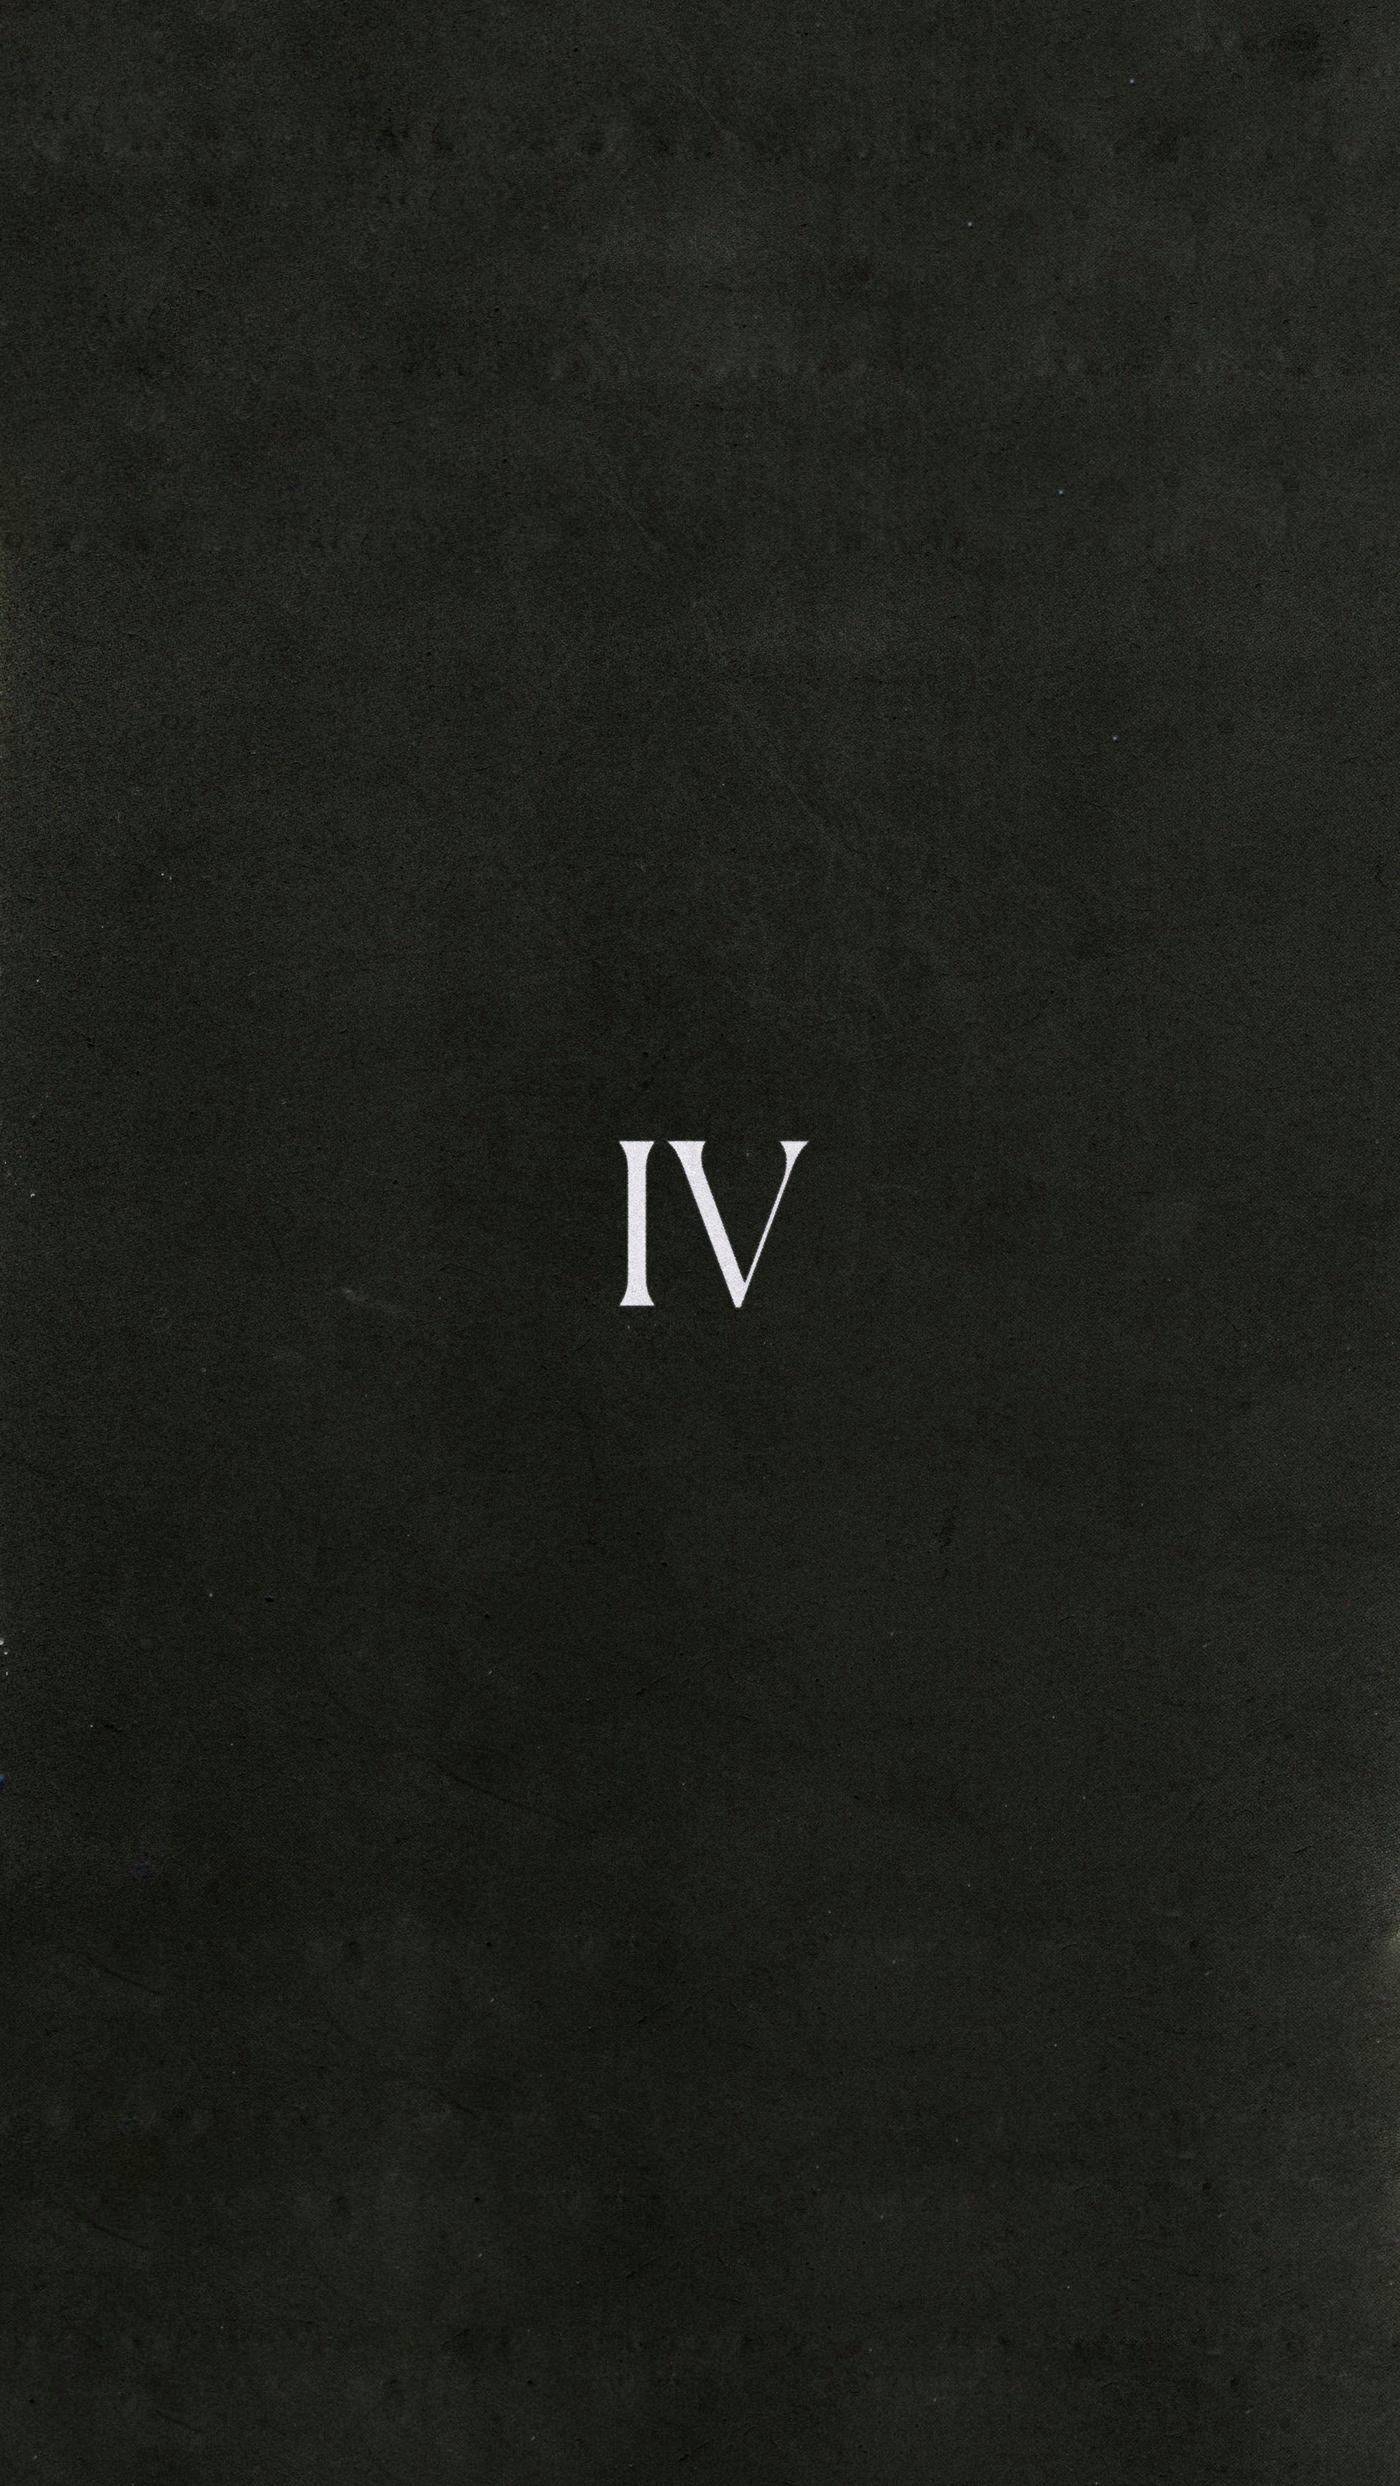 Kendrick Lamar, Portrait display, Hip hop, Roman numerals Wallpaper